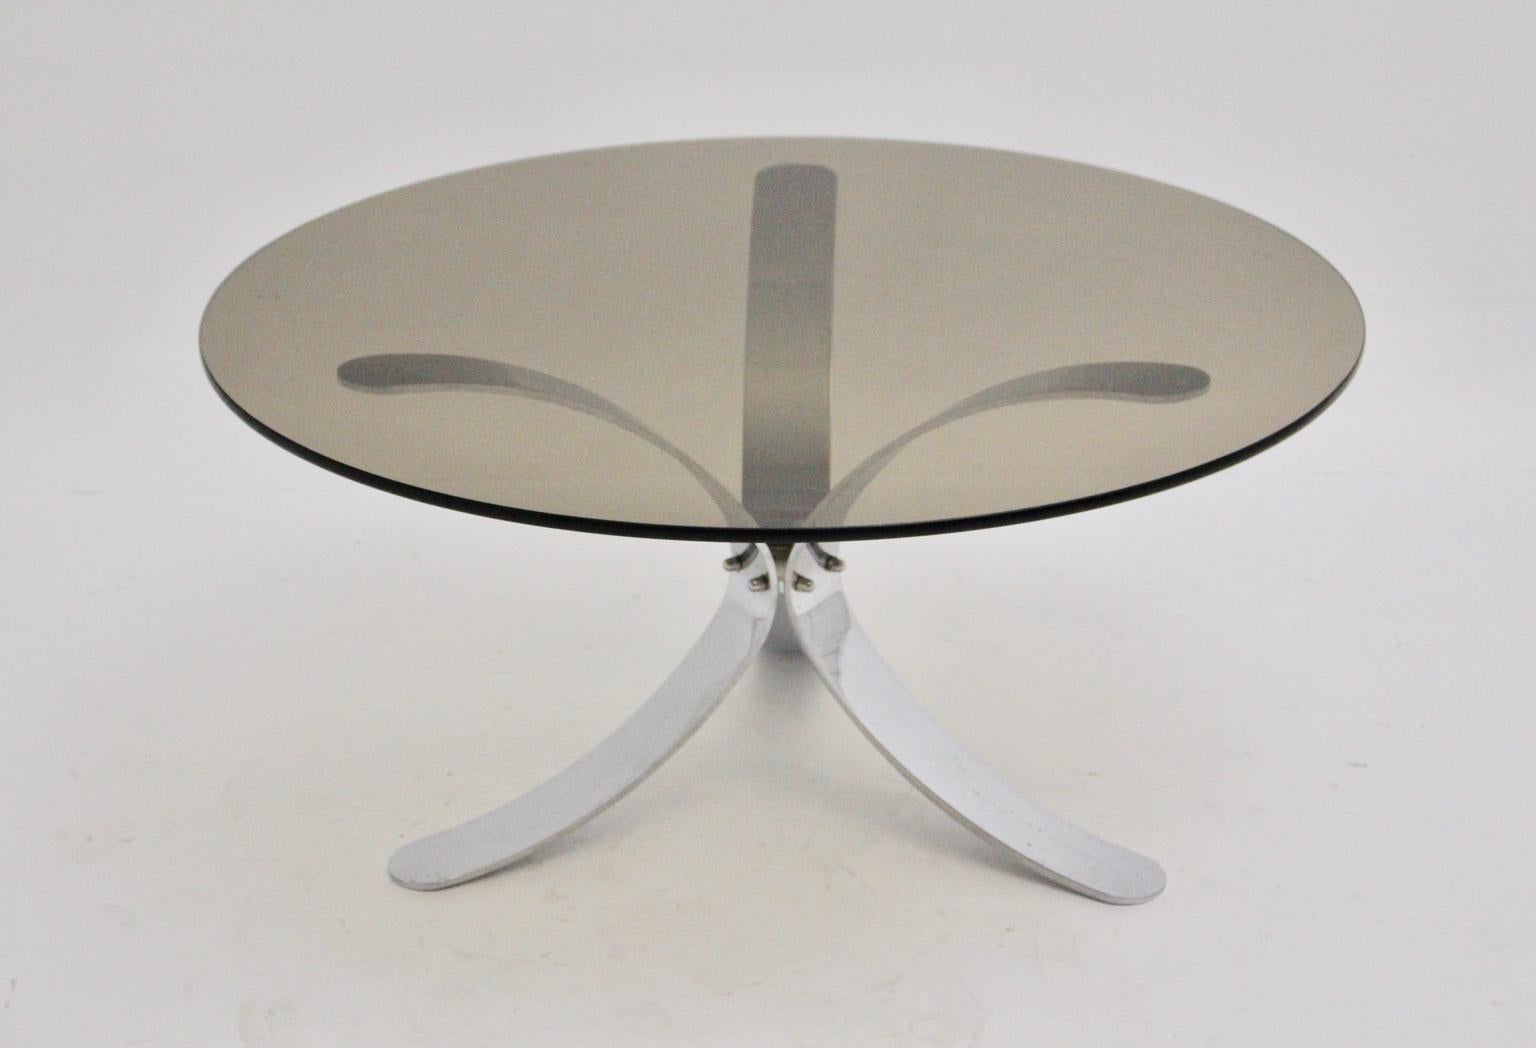 Cette table basse ou table de canapé présentée a été conçue et fabriquée vers 1970 en Allemagne.
La base à trois pieds en métal chromé présente une forme incurvée et est fixée au milieu par des vis chromées.
De plus, le plateau rond en verre fumé